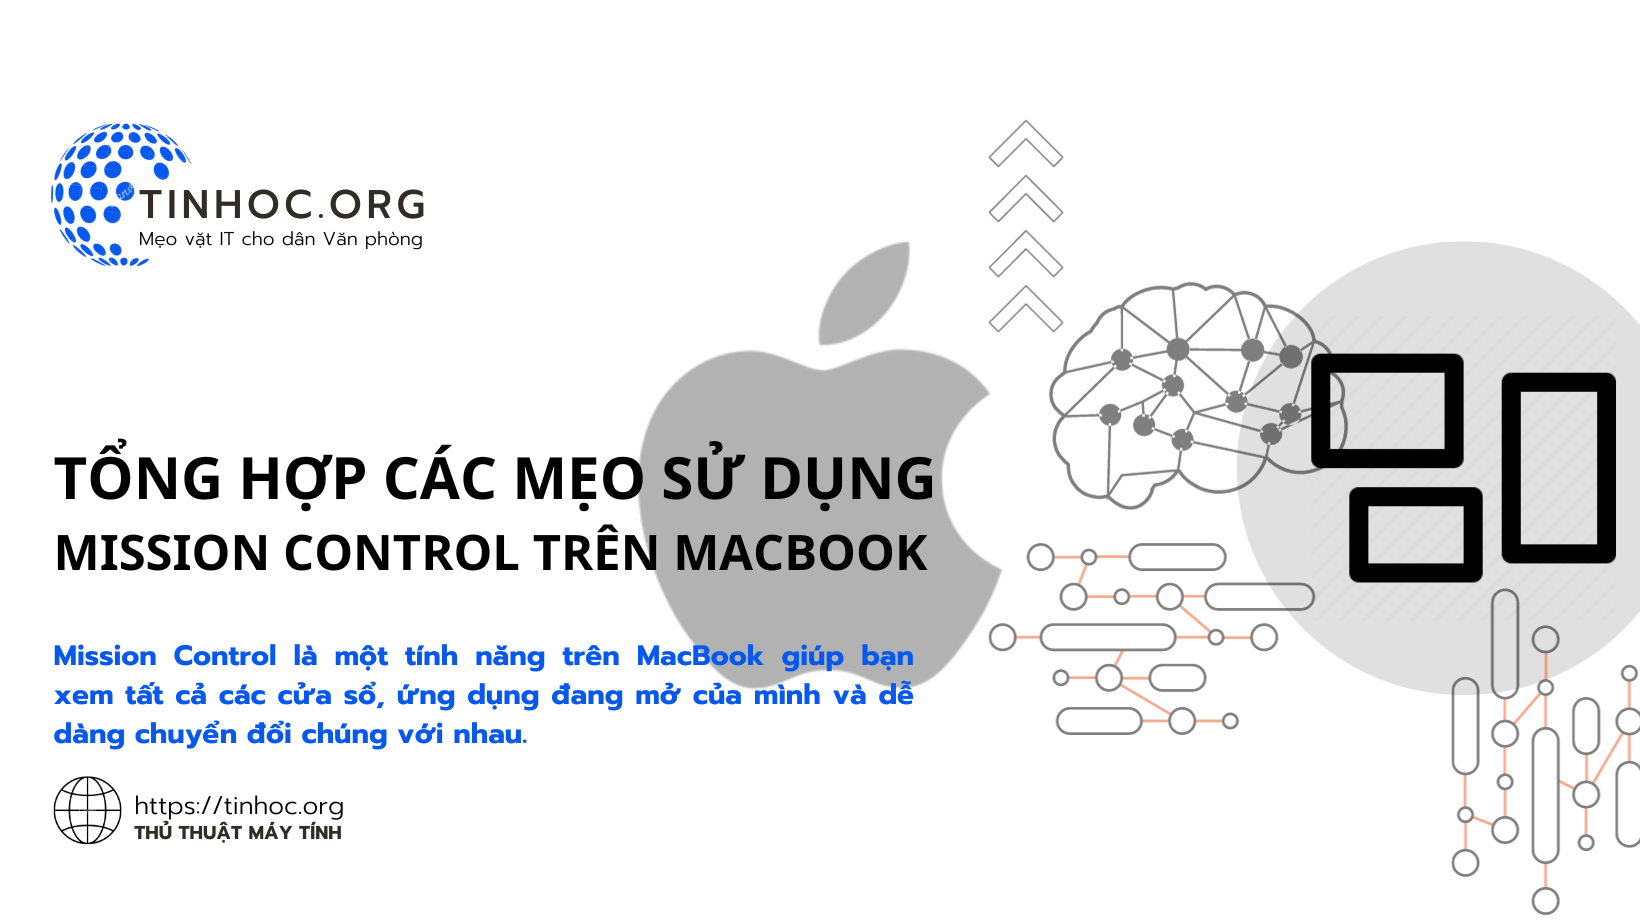 Tổng hợp các mẹo sử dụng Mission Control trên MacBook